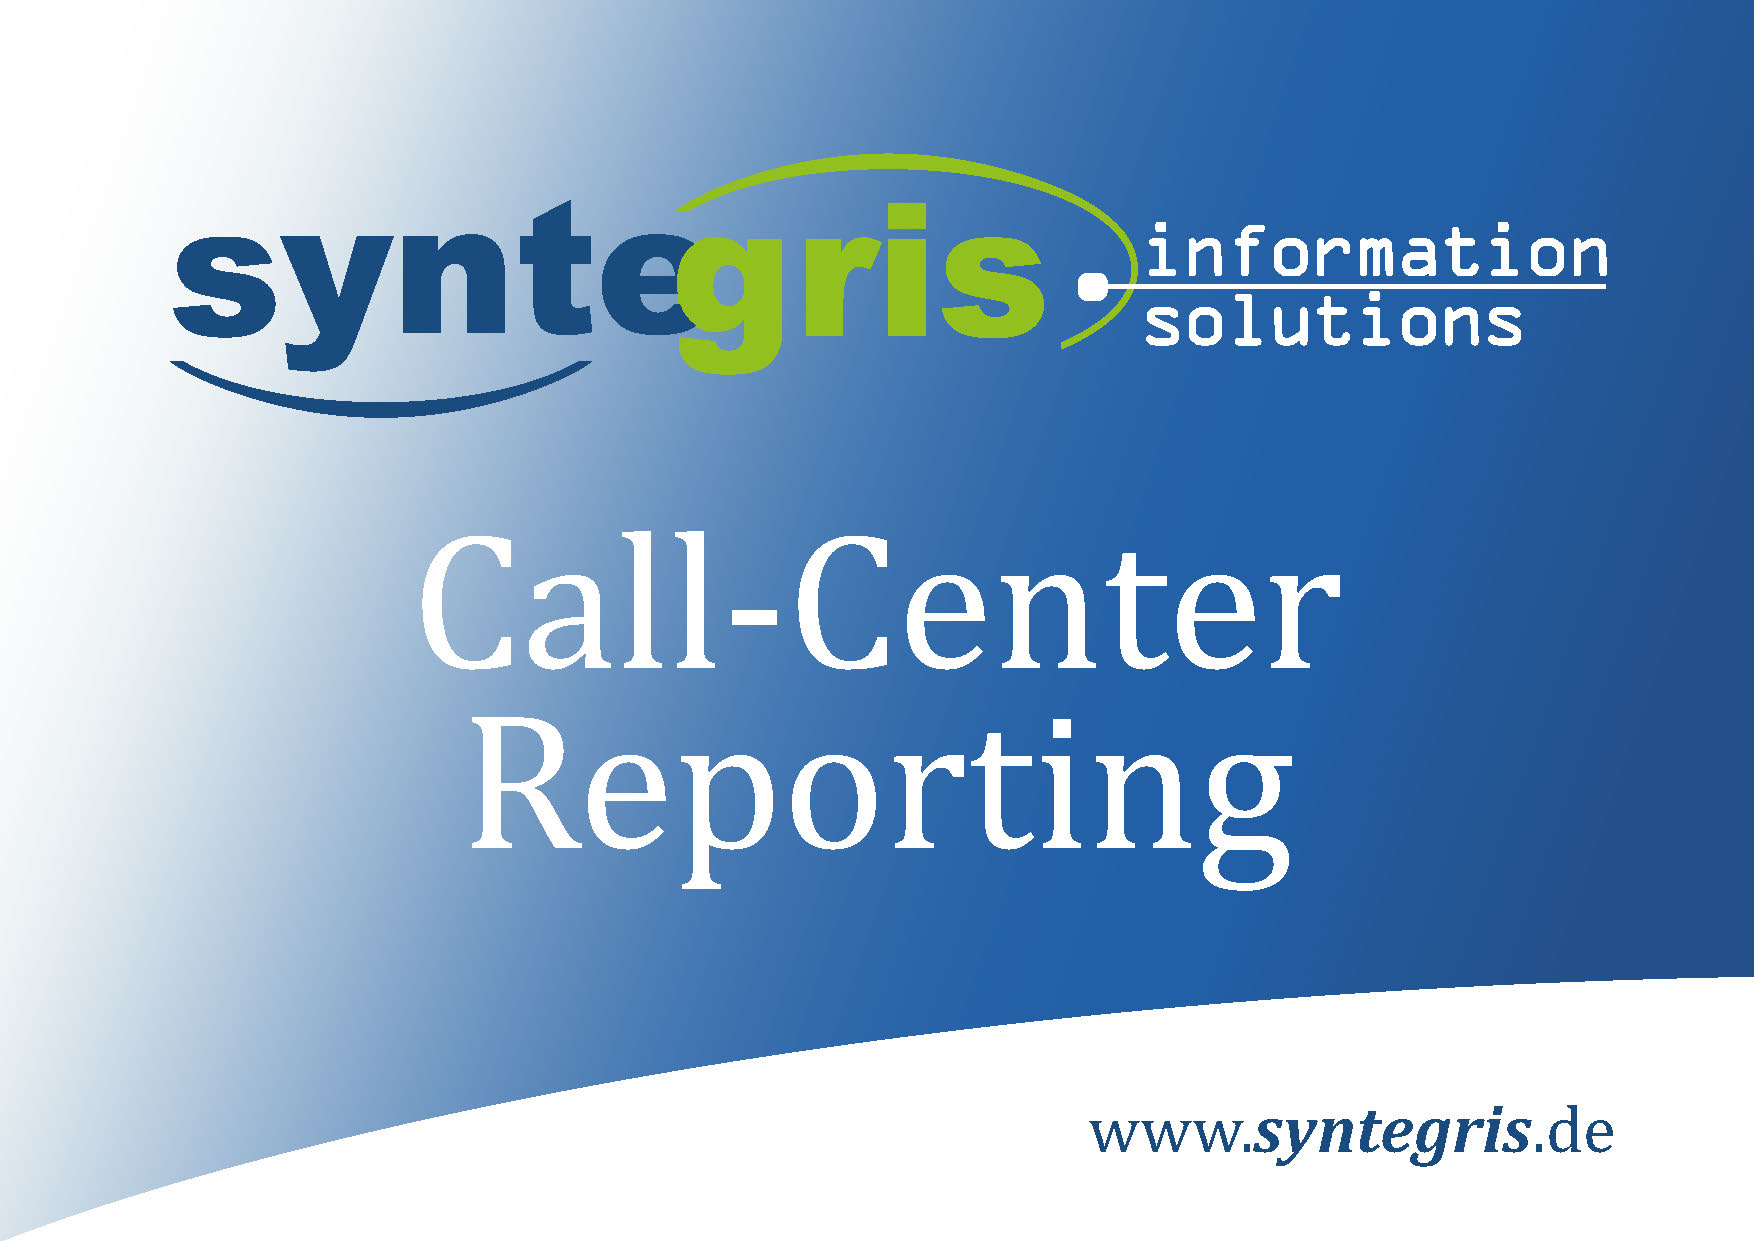 Syntegris Call Center